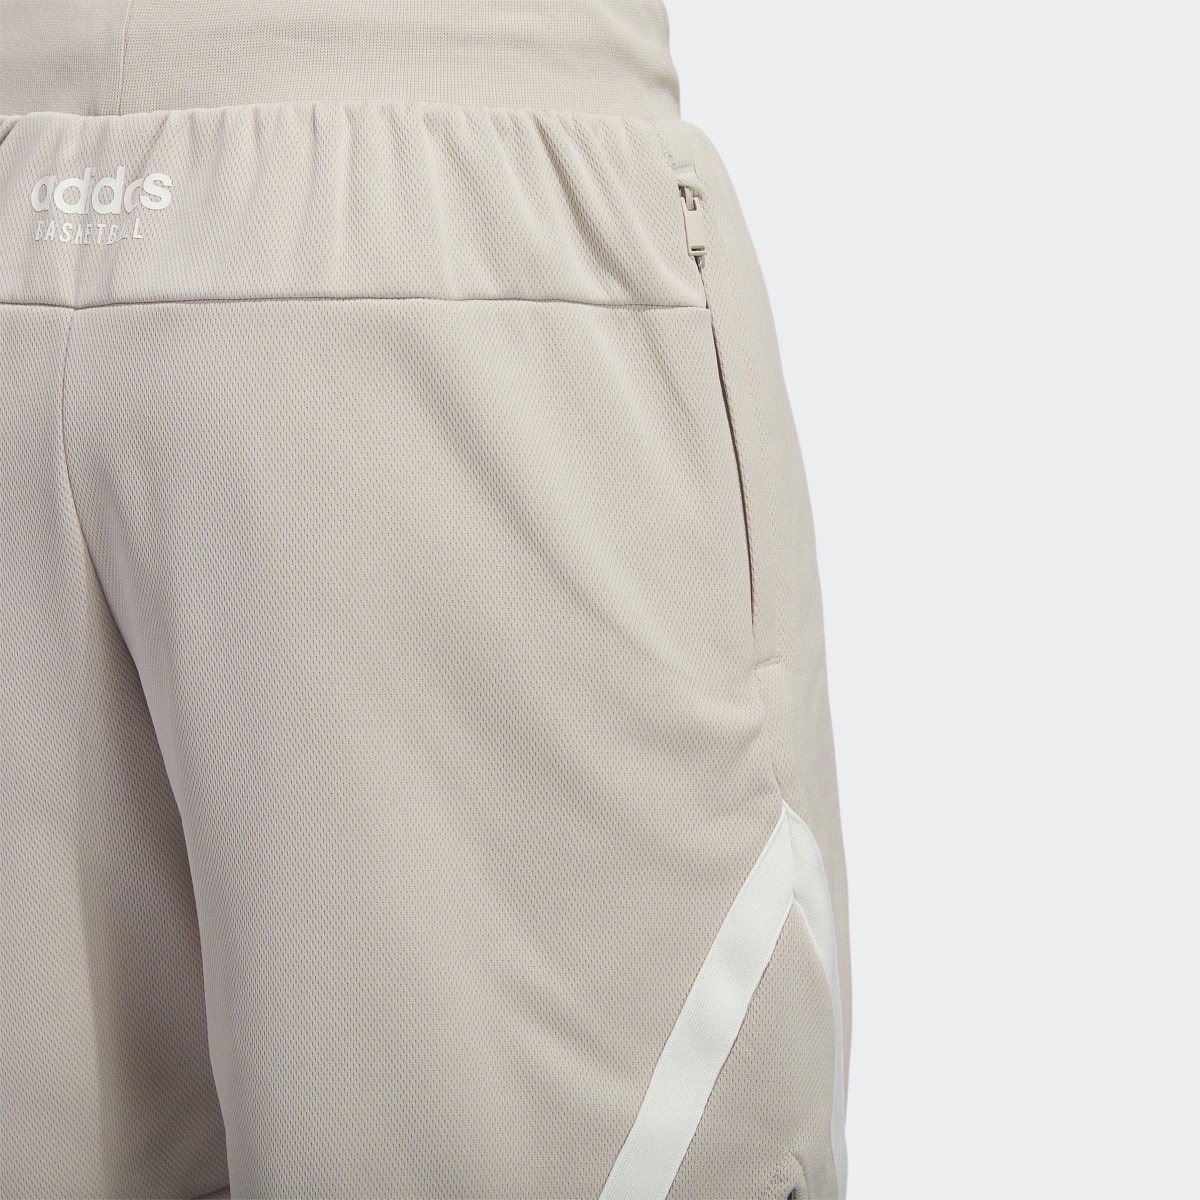 Adidas Select Shorts. 7